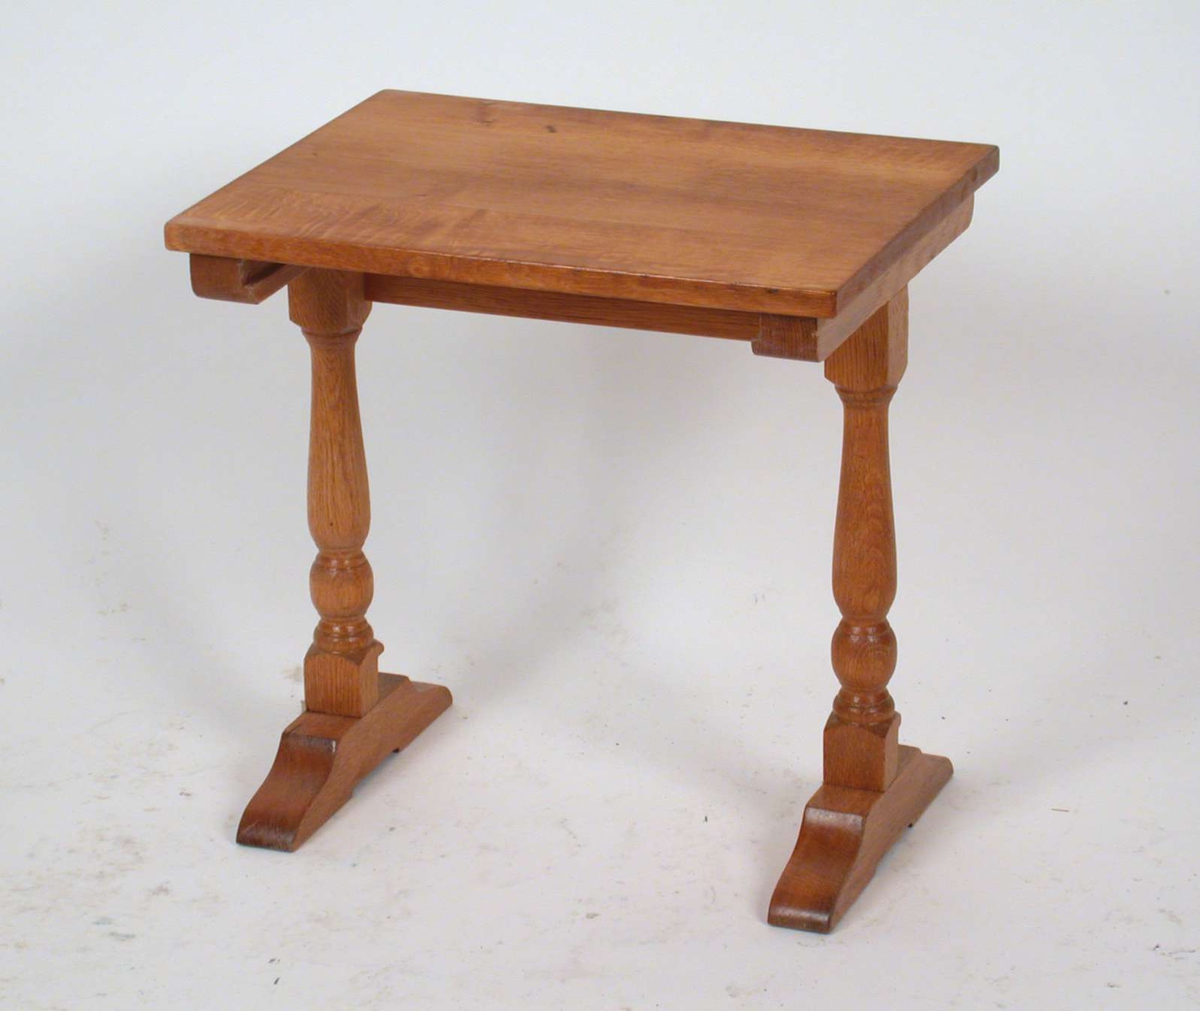 Settbord med dreide ben. Materialet er eik. Dette bordet er det mellomste av tre bord.